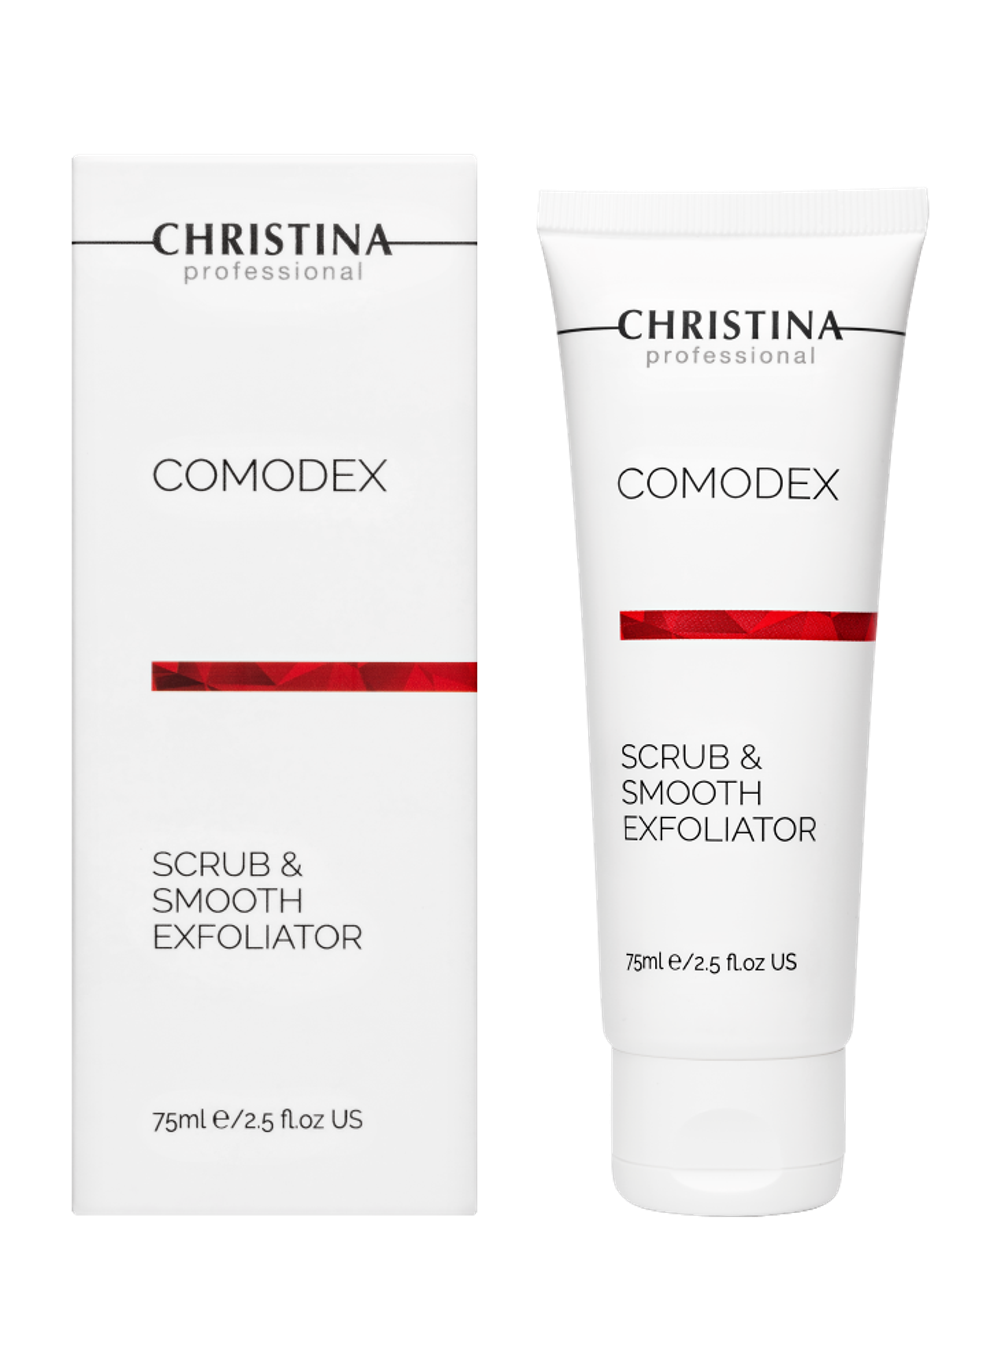 CHRISTINA Comodex Scrub & Smooth Exfoliator